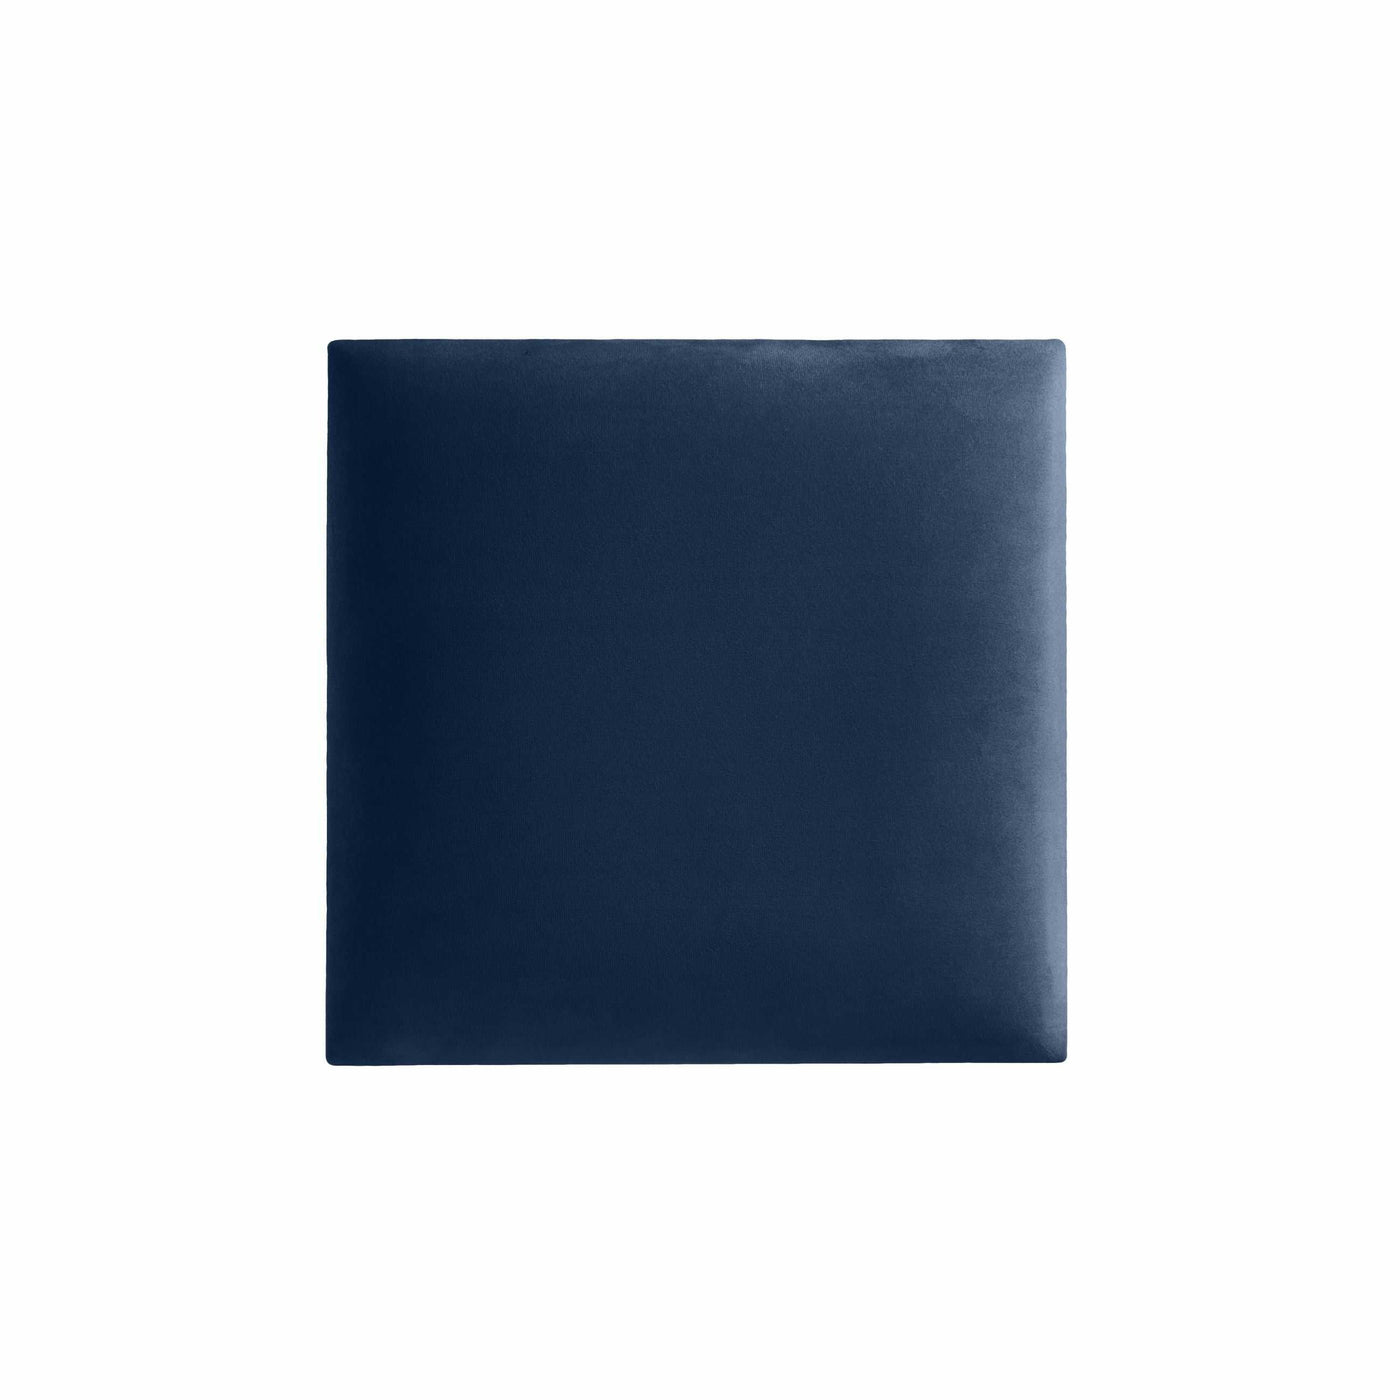 Wandpolster 30x30 aus Riviera Samt Stoff in der Farbe Dunkel-Blau RV81